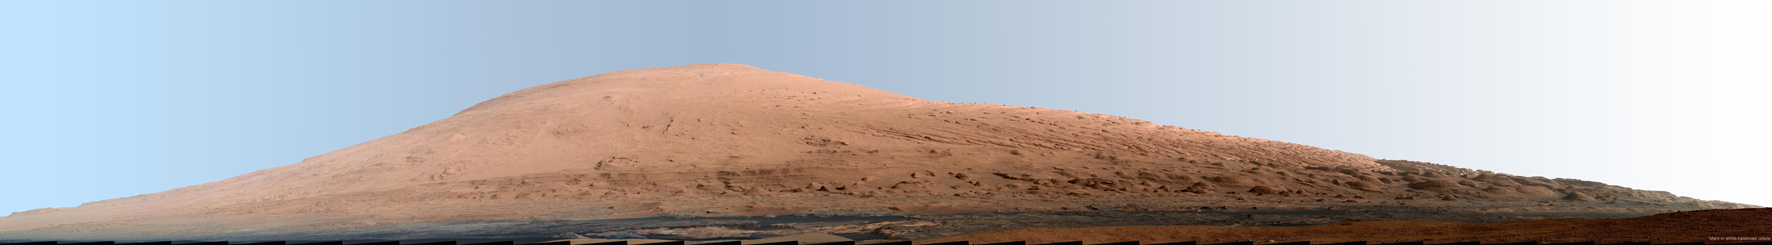 Wydma Aeolis Mons widziana przez kamerę łazika Curiosity z krateru Gale